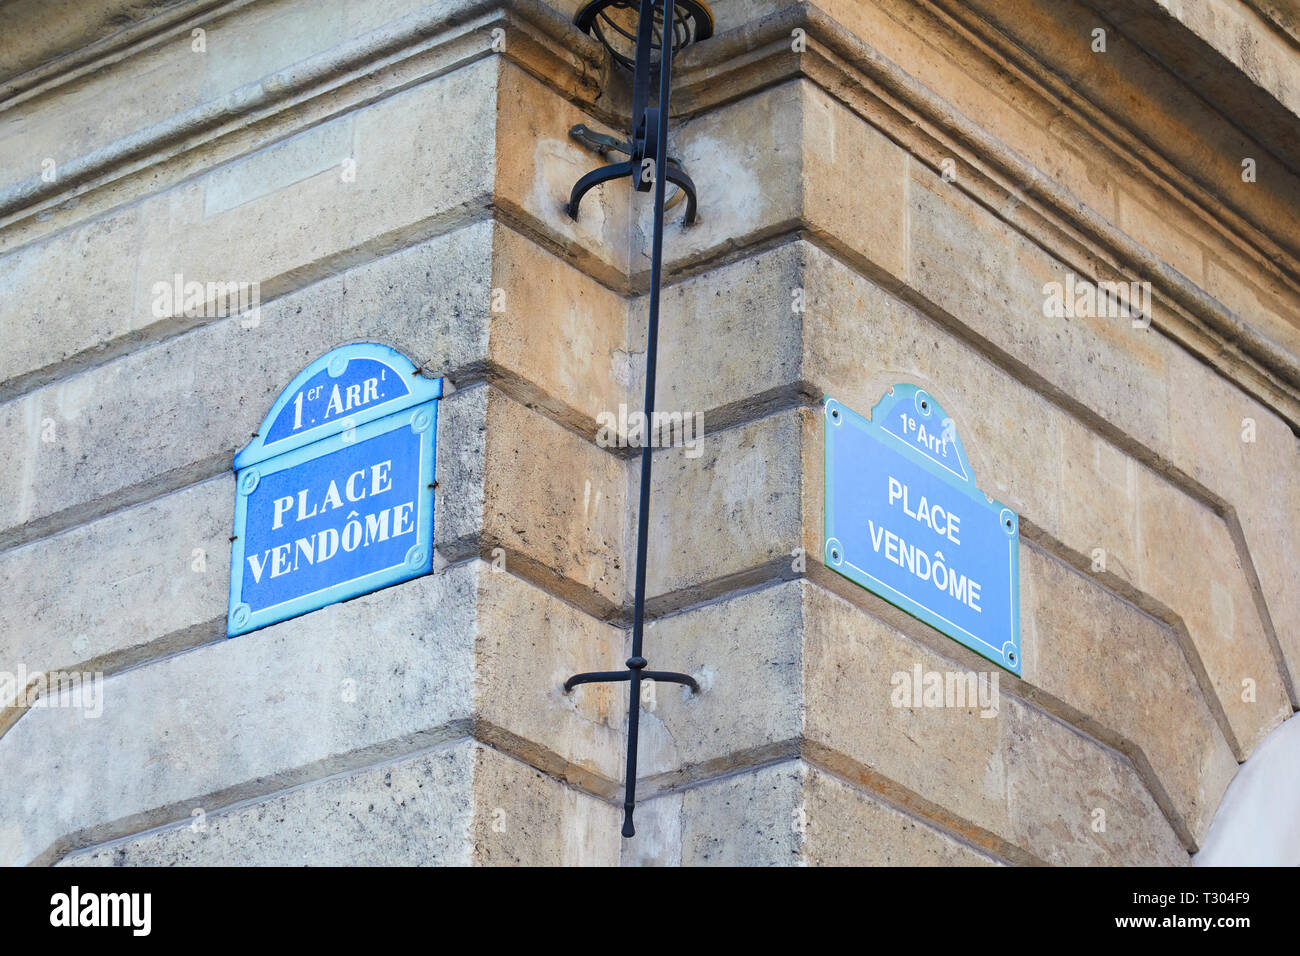 Célèbre Place Vendôme coin avec des plaques de rue à Paris, France Banque D'Images